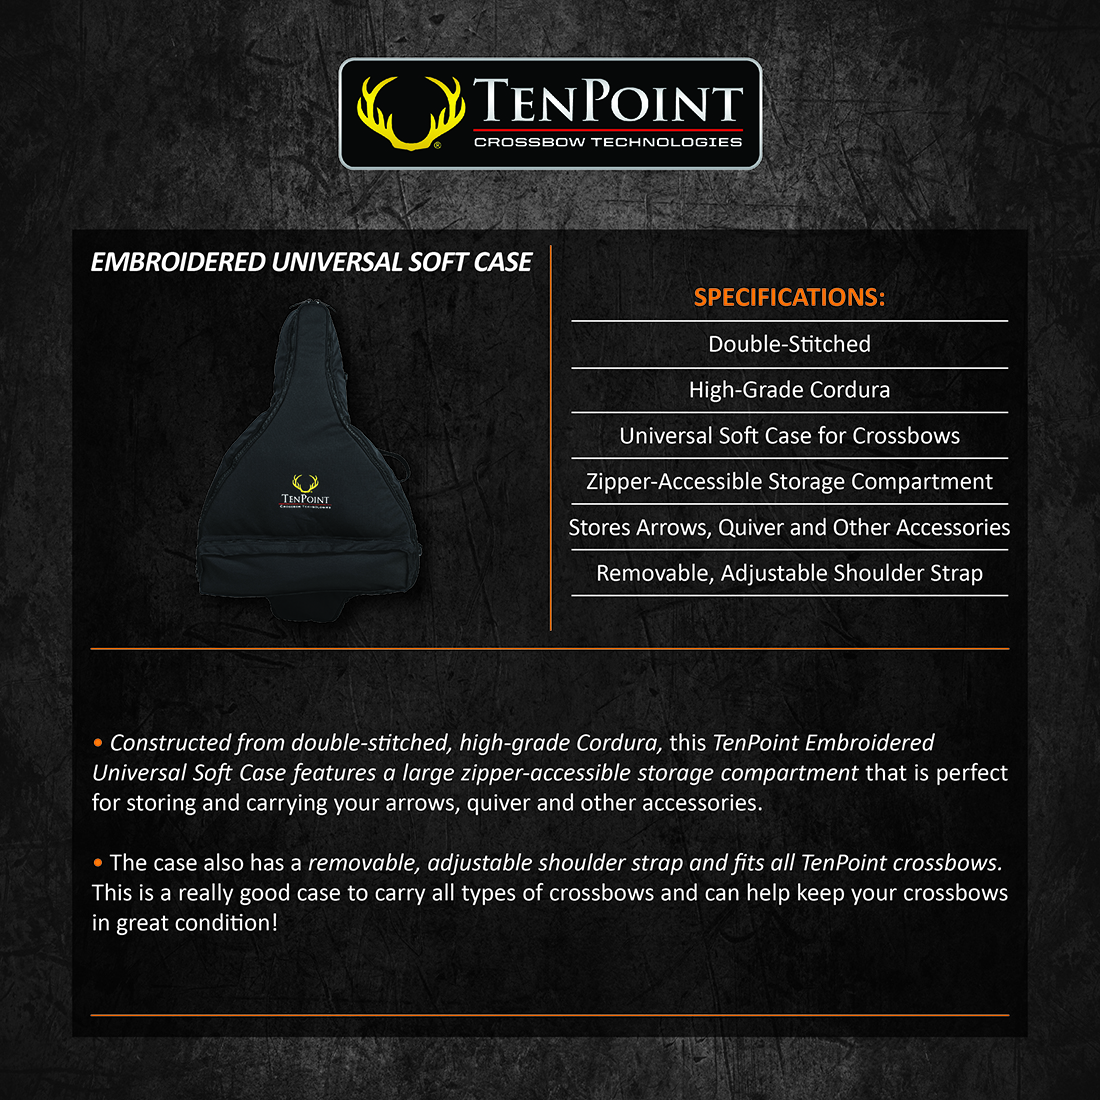 TenPoint_Universal_Soft_Case_Product_Description